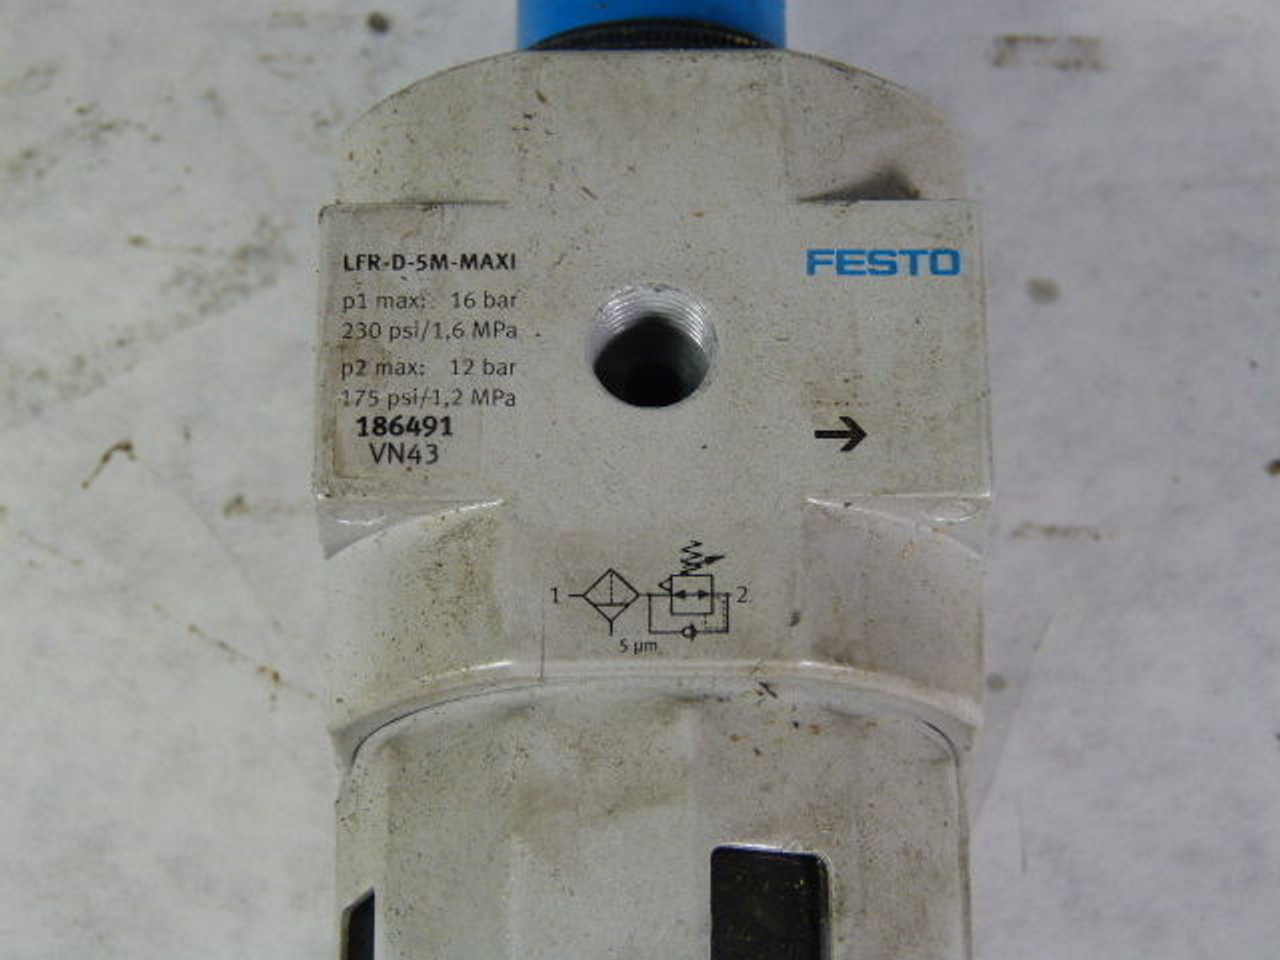 Festo 186491 LFR-1/2-D-5M-MAXI Filter Regulator G1/2 NO GAUGE USED